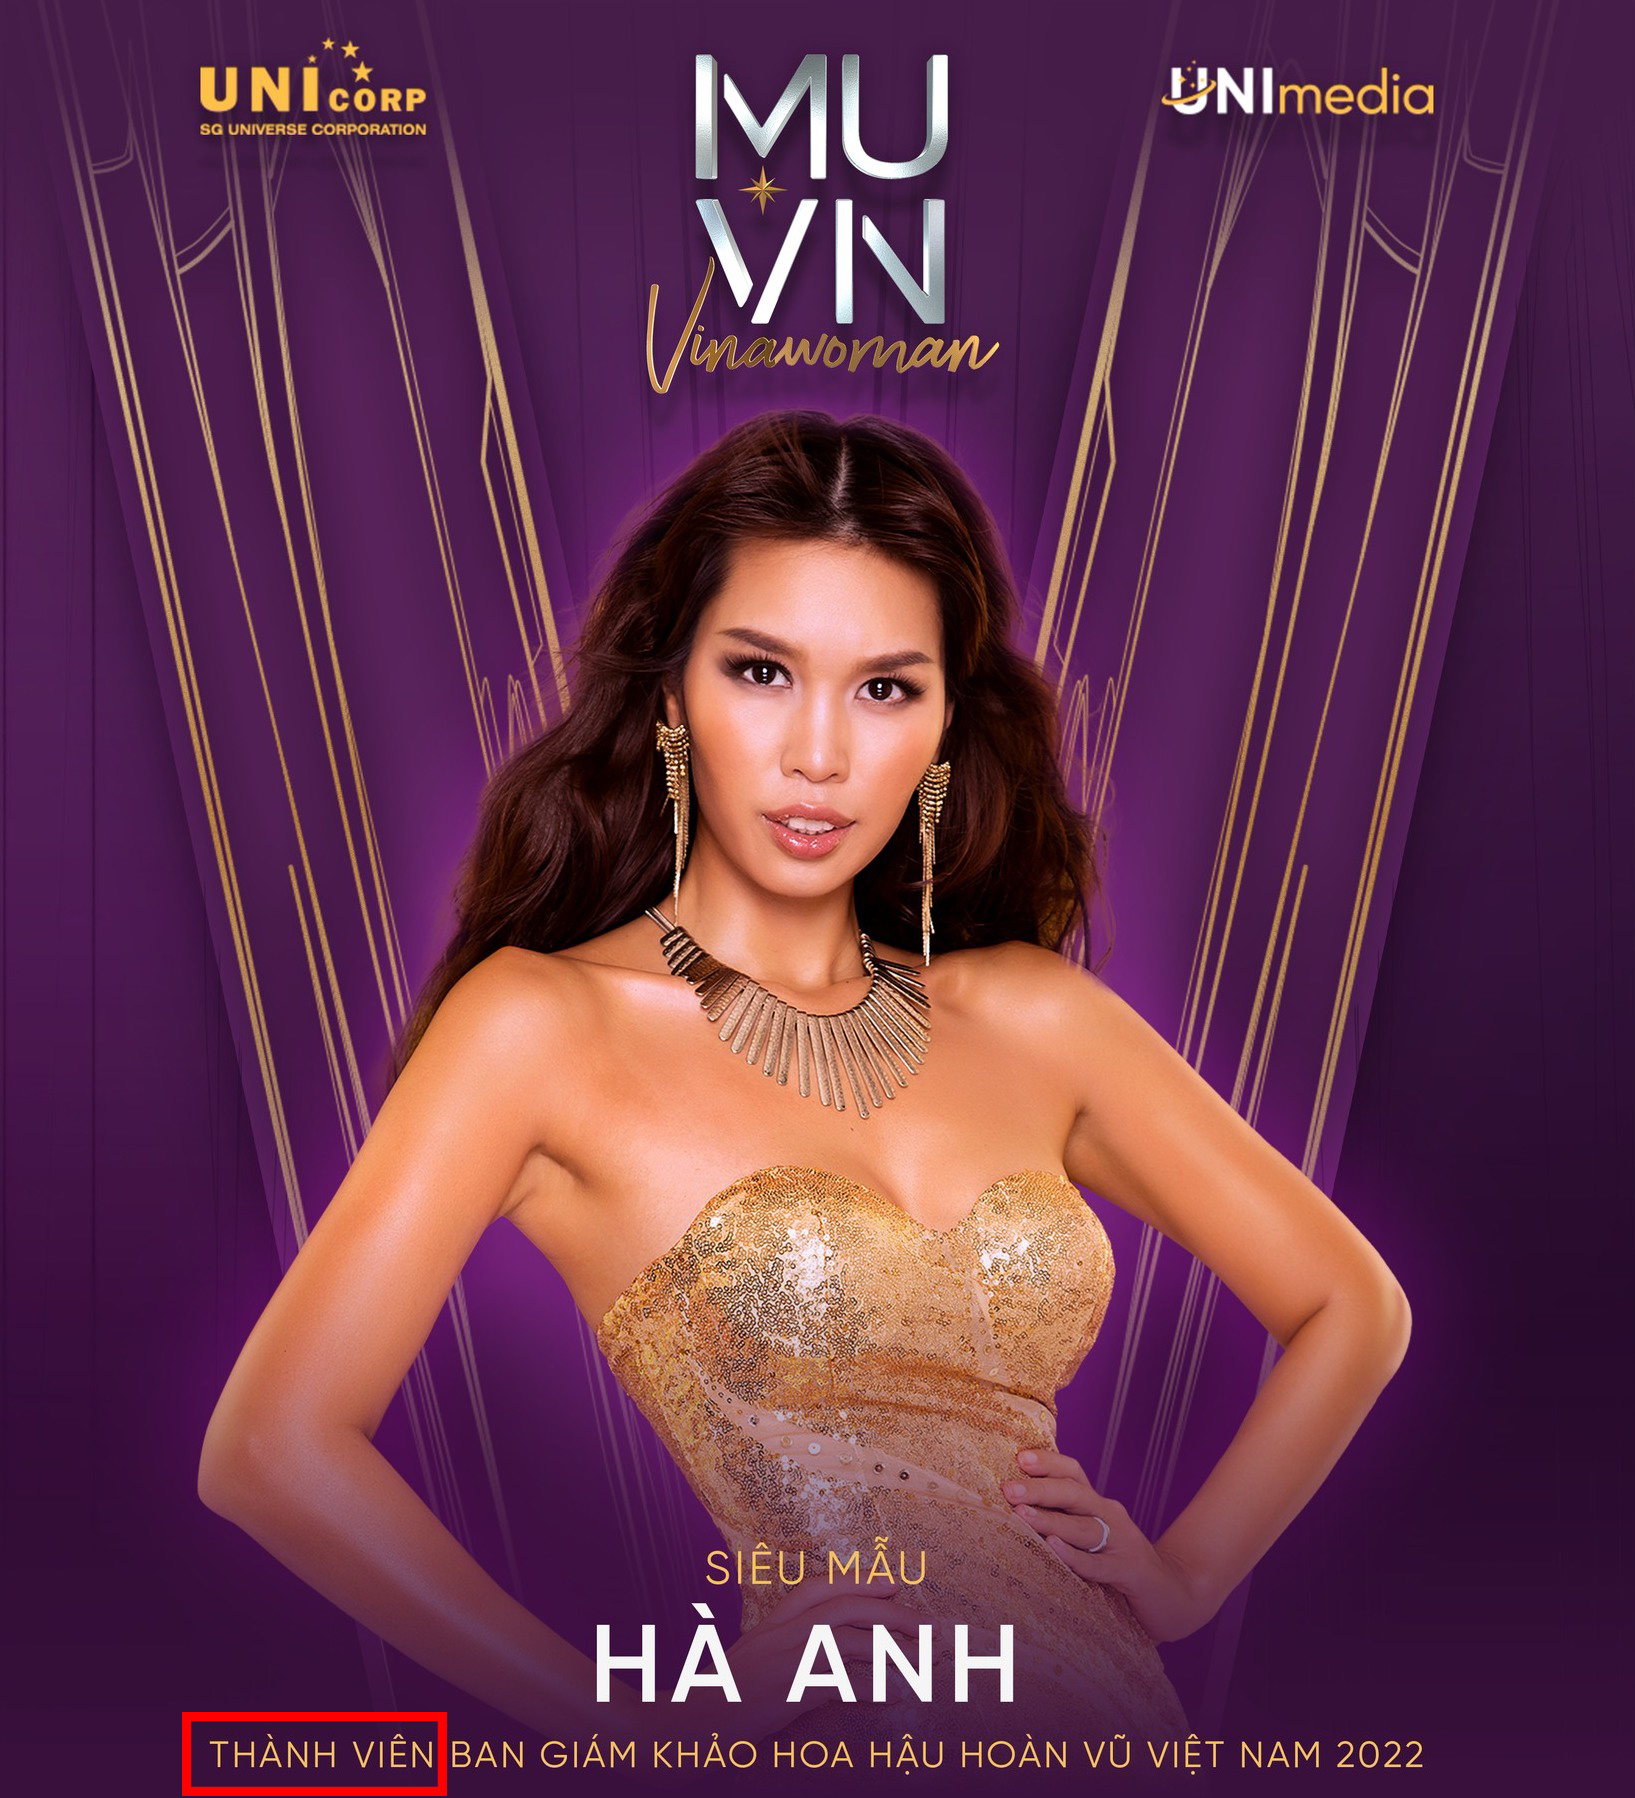 Bài công bố Hà Anh làm giám khảo Miss Universe Vietnam bỗng bay màu, chuyện gì đây? - Ảnh 7.